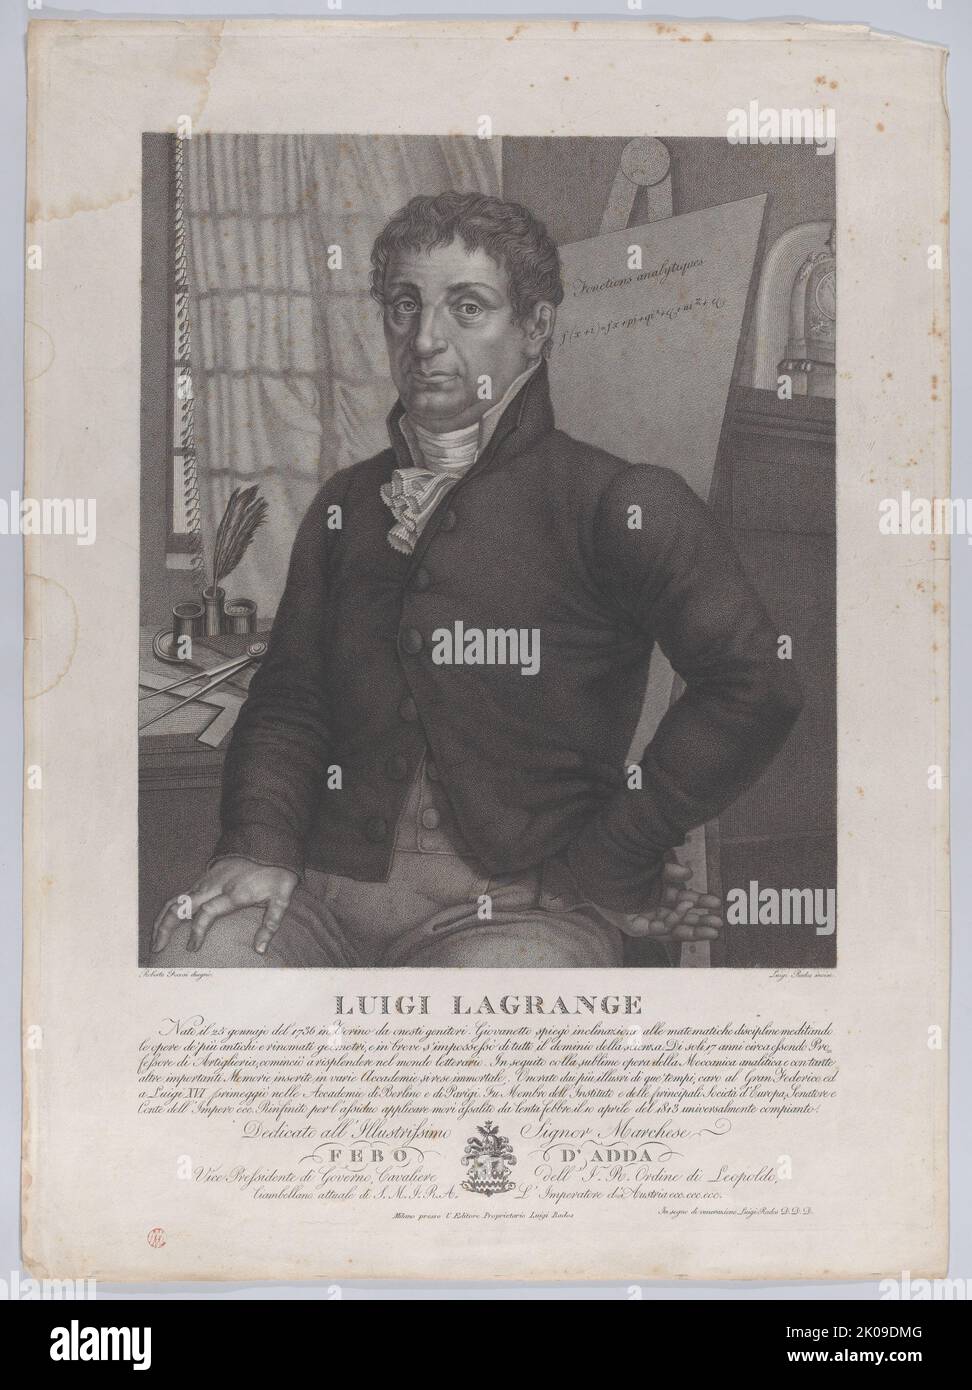 Porträt von Luigi Lagrange, mit einer Staffelei hinter ihm auf der rechten Seite mit einer mathematischen Gleichung, 1827. Stockfoto